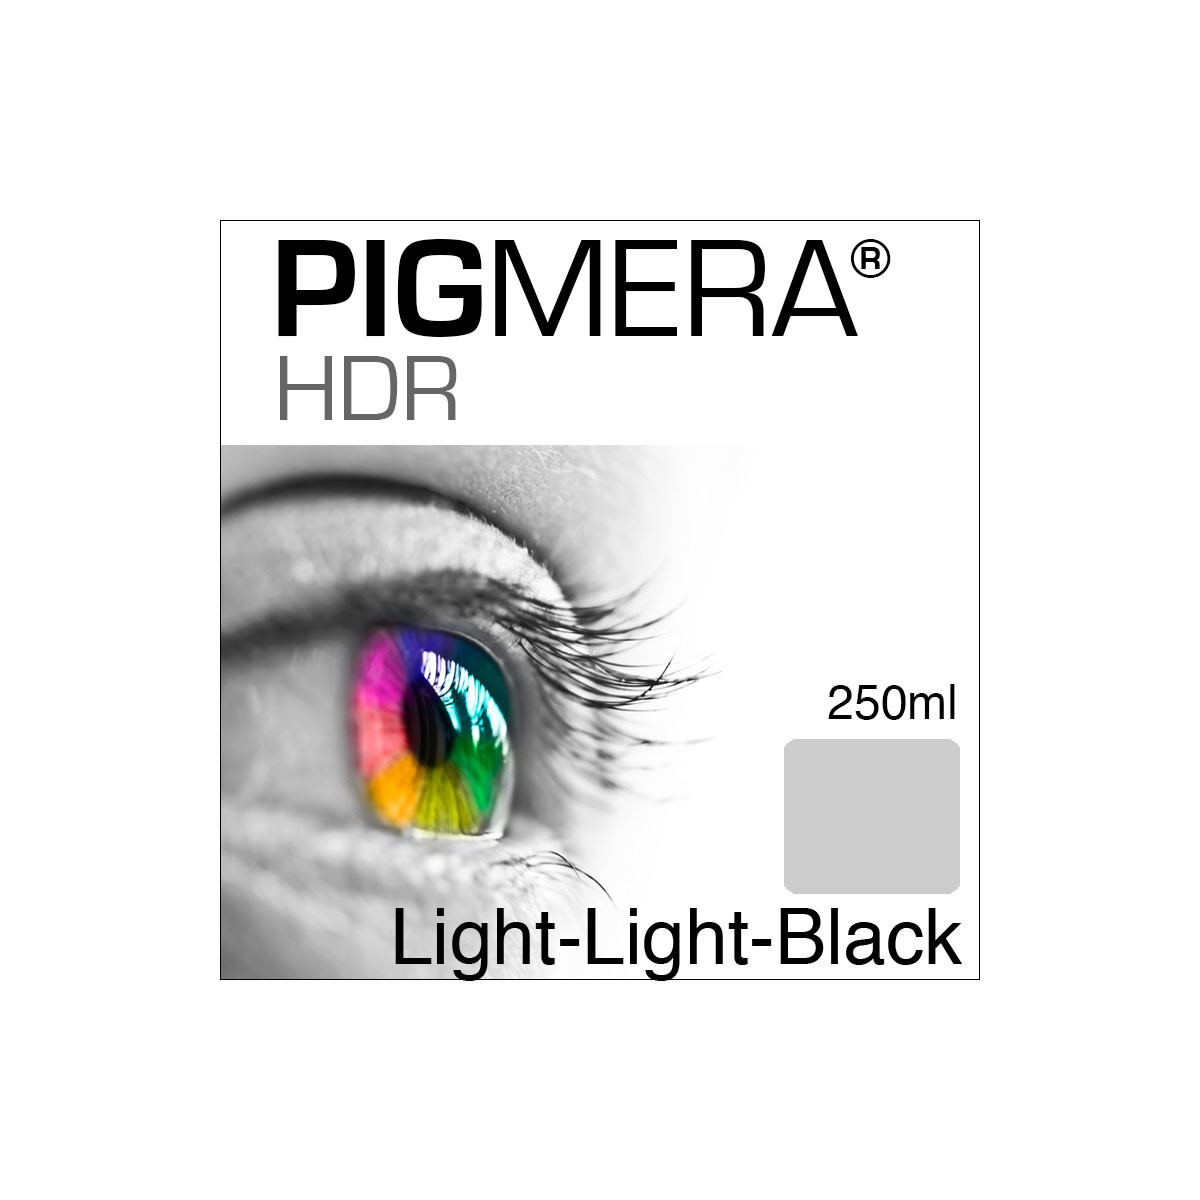 farbenwerk Pigmera HDR Bottle Light-Light-Black 250ml